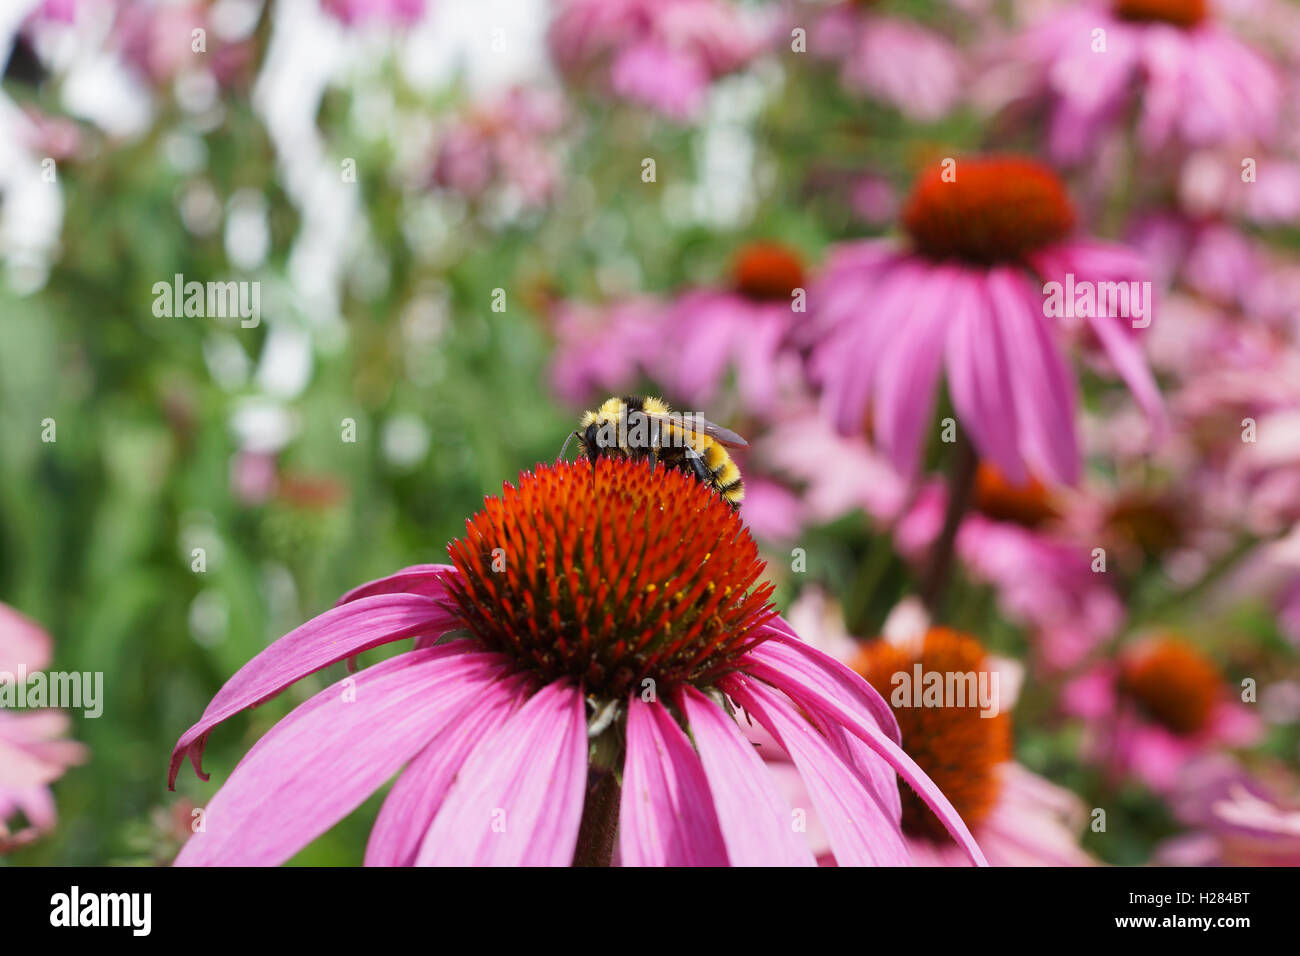 Honeybee on echinacea Stock Photo